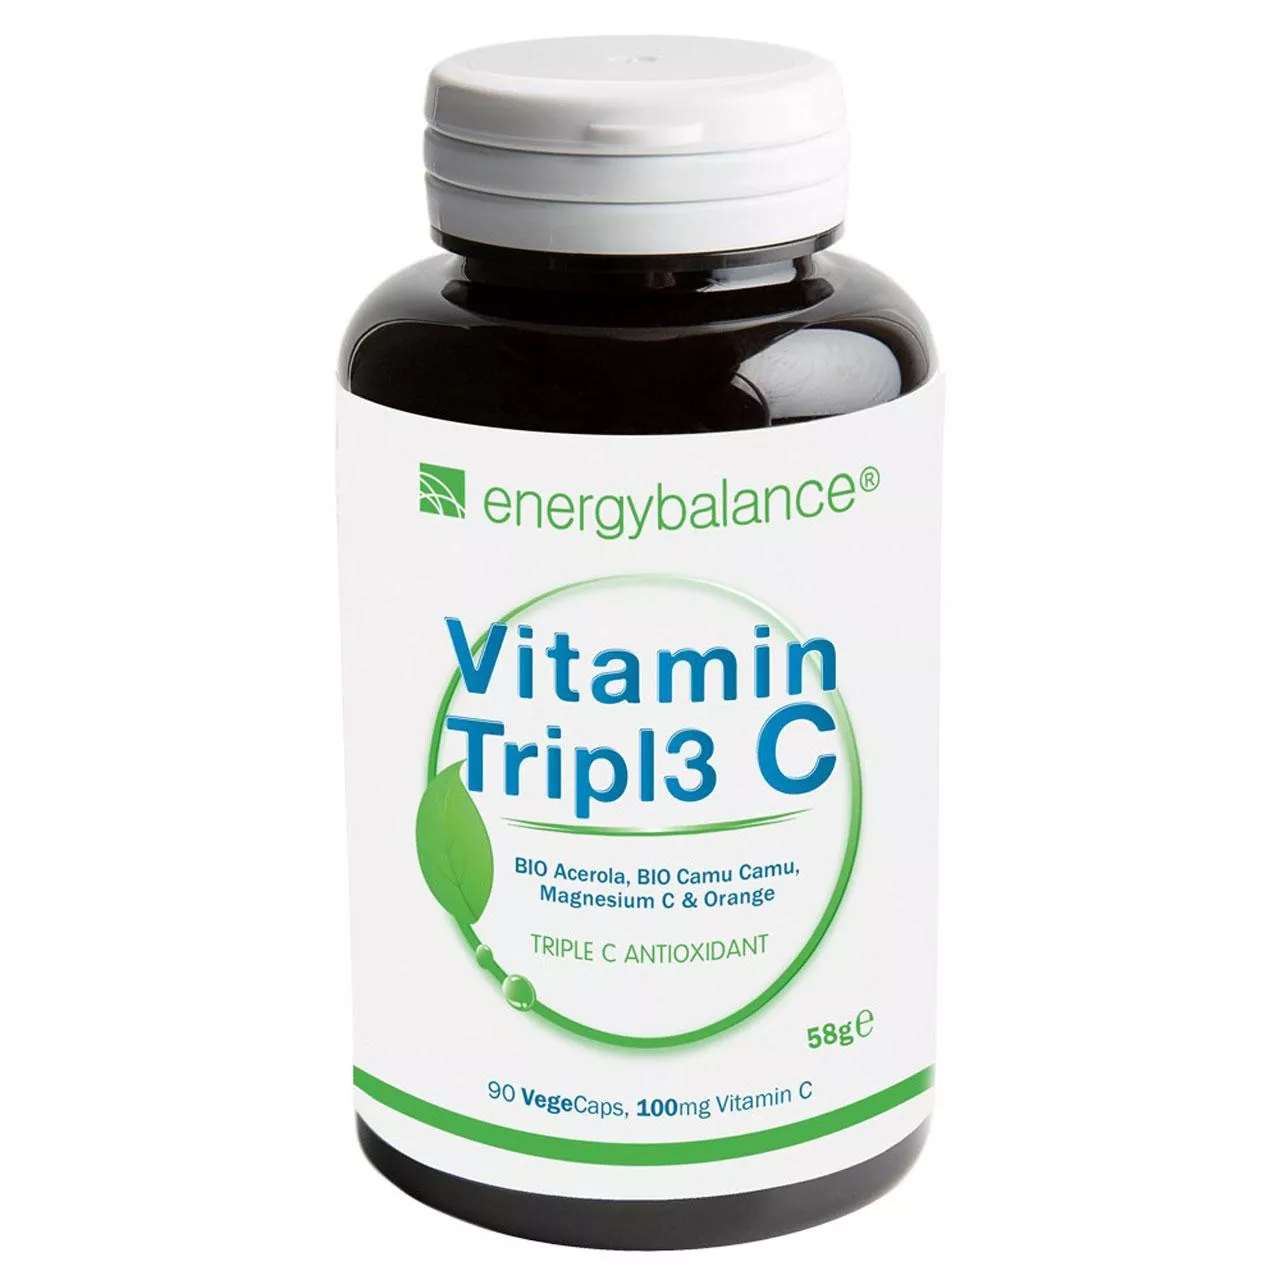 Vitamin Tripl3 C, 90 VegeCaps